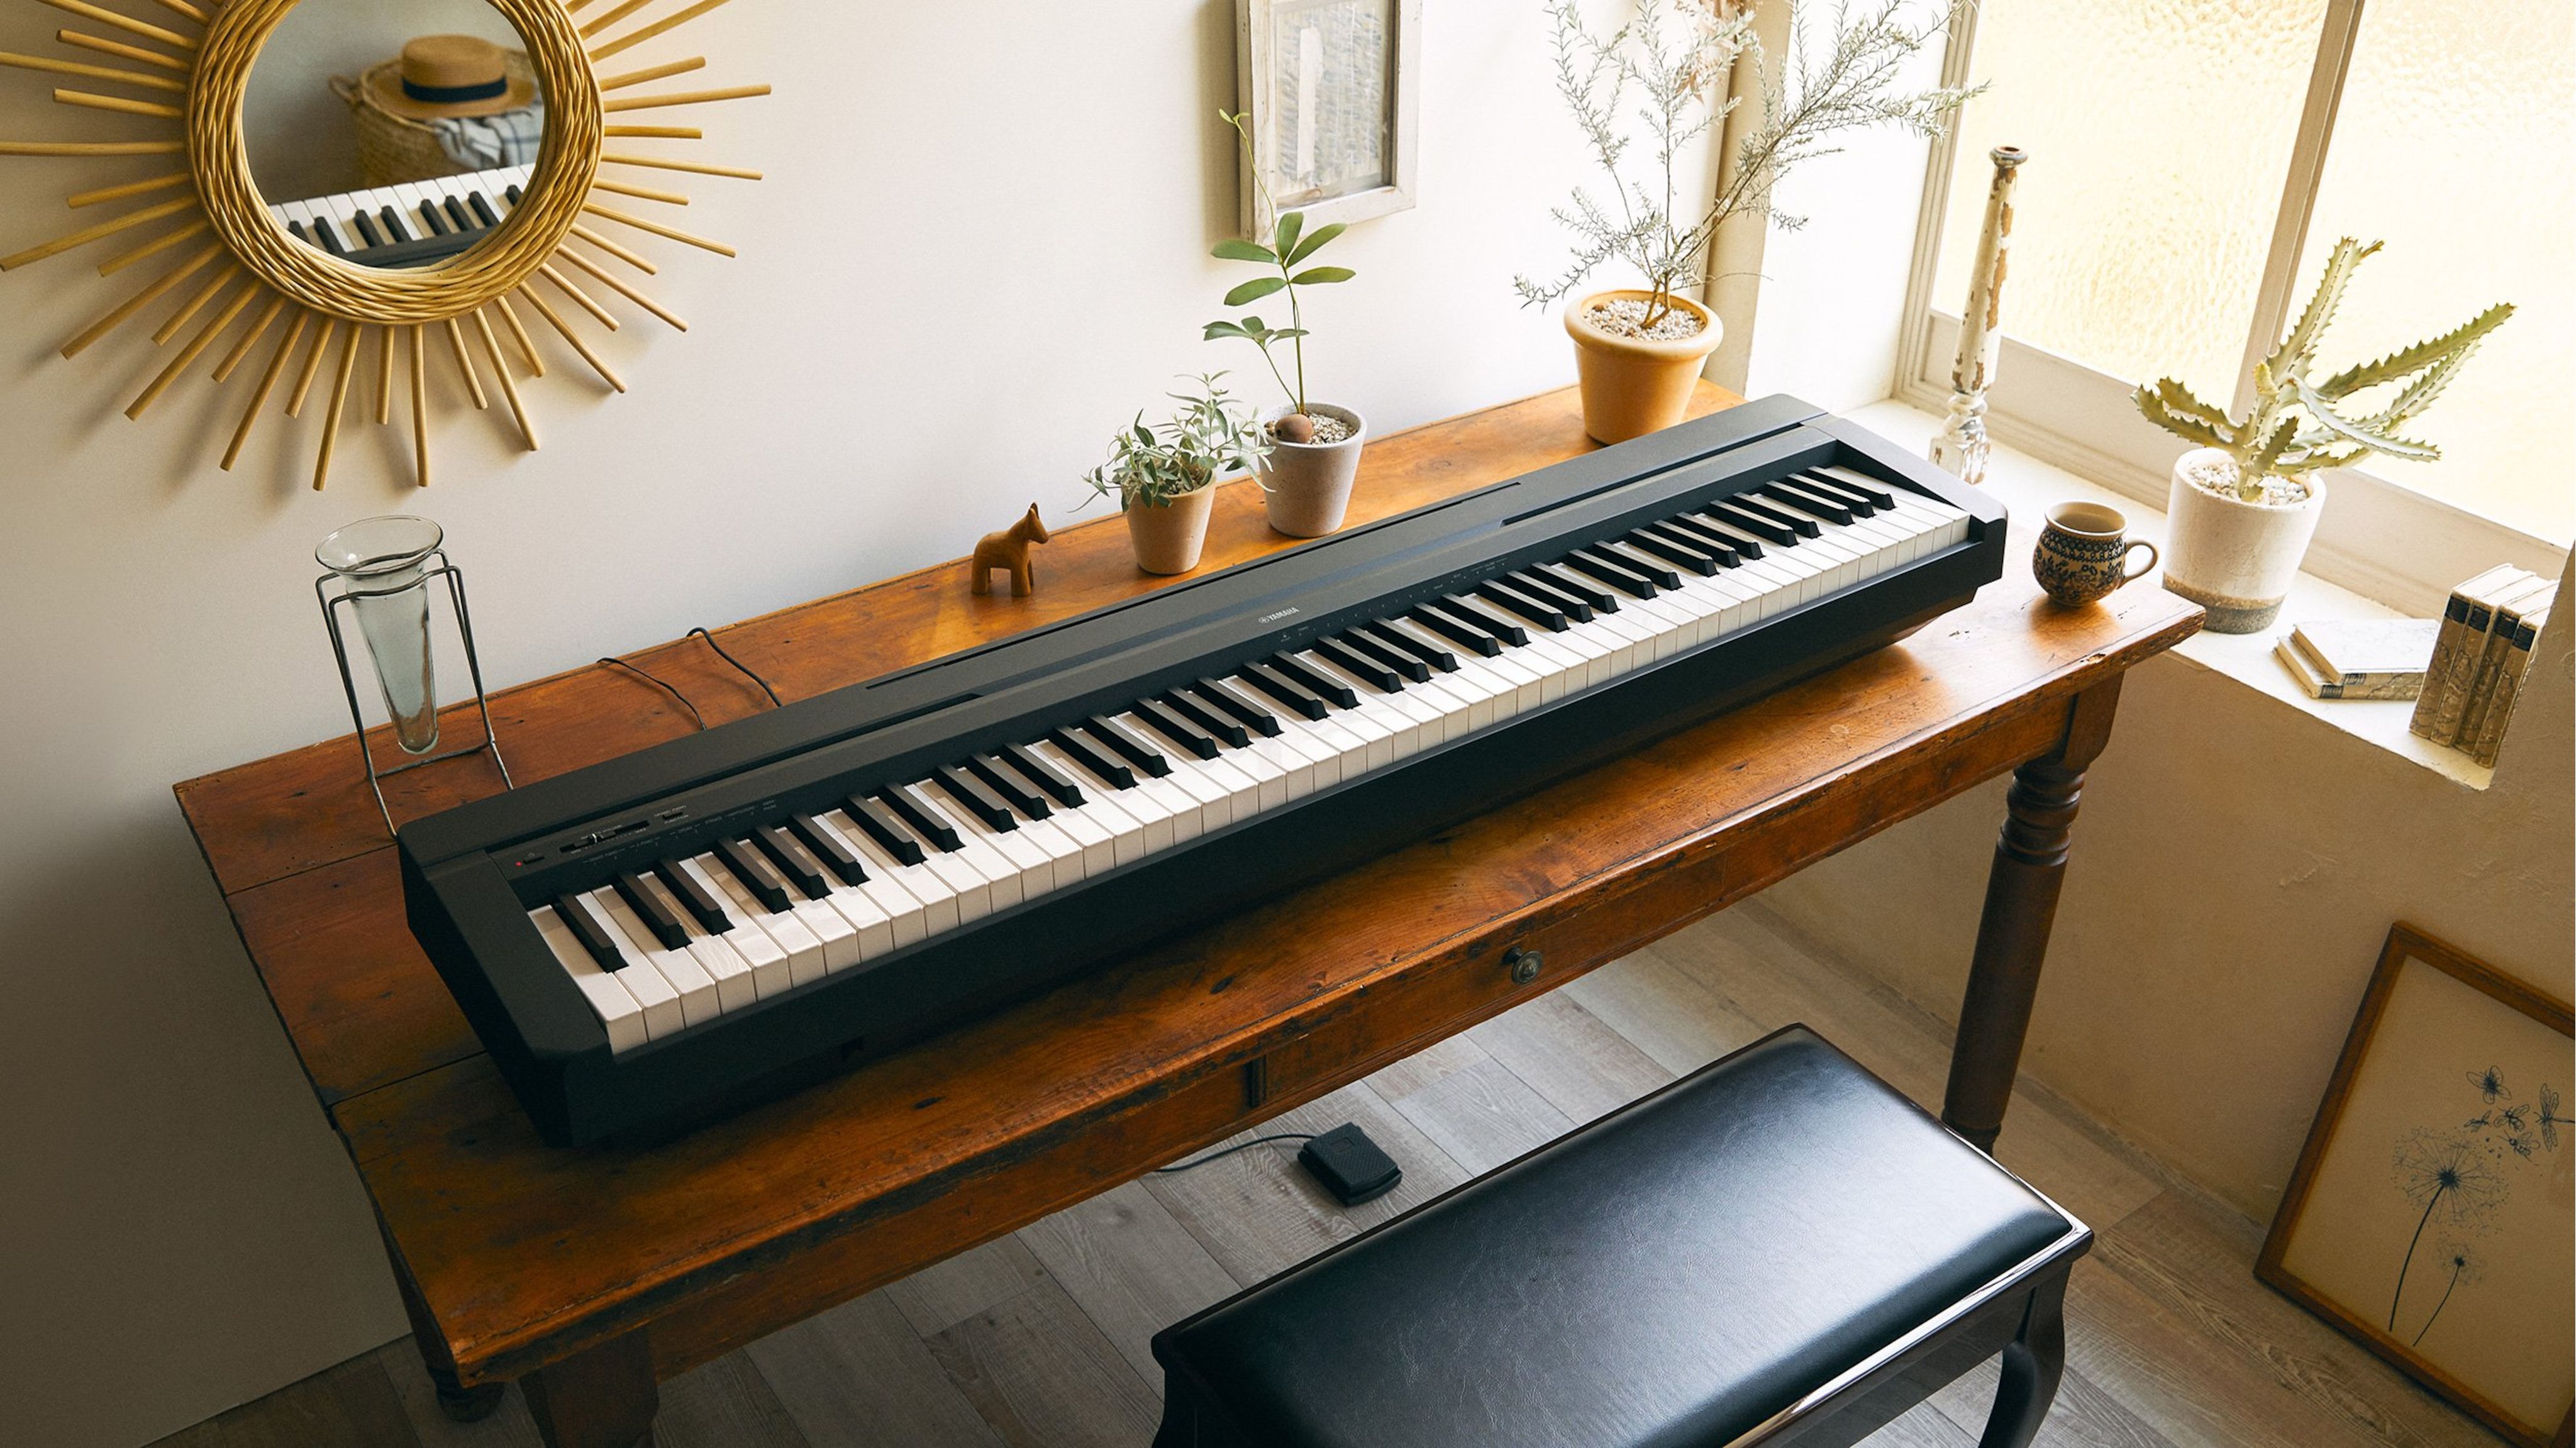 Best beginner keyboard - black keyboard with few buttons on wooden desk in room.